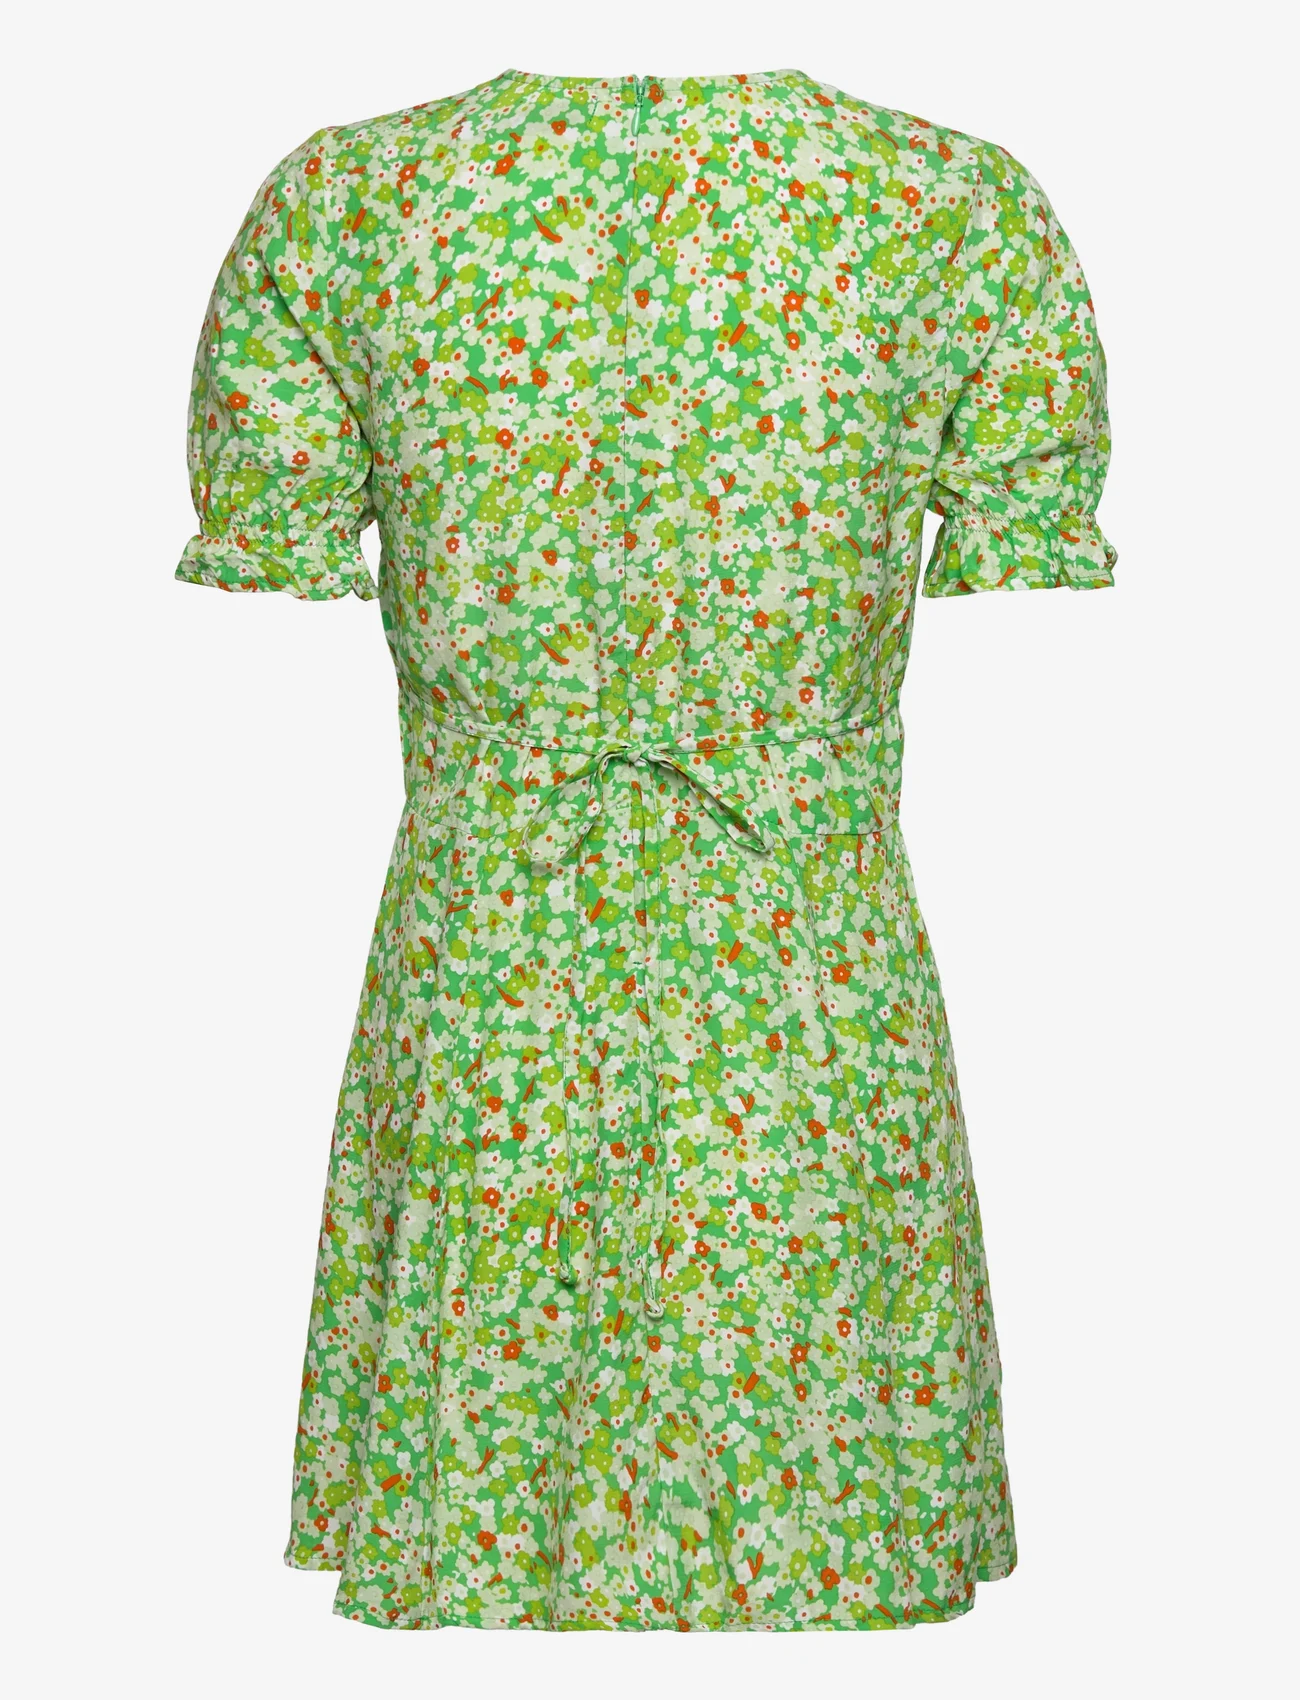 Faithfull The Brand - LA BELLE MINI DRESS - sommerkleider - lou floral print - green - 1